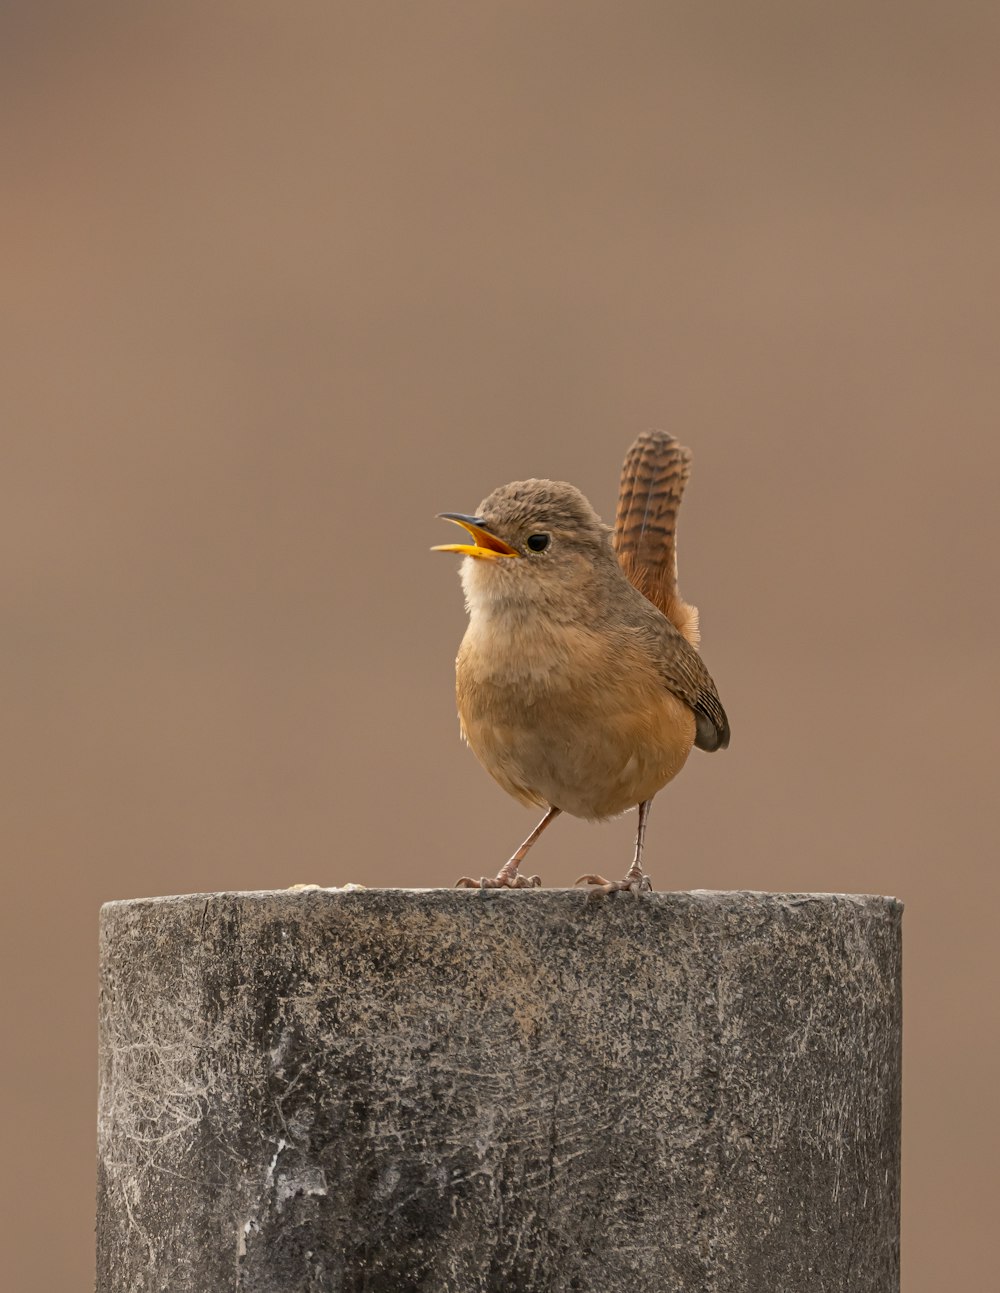 a small brown bird standing on top of a cement pillar